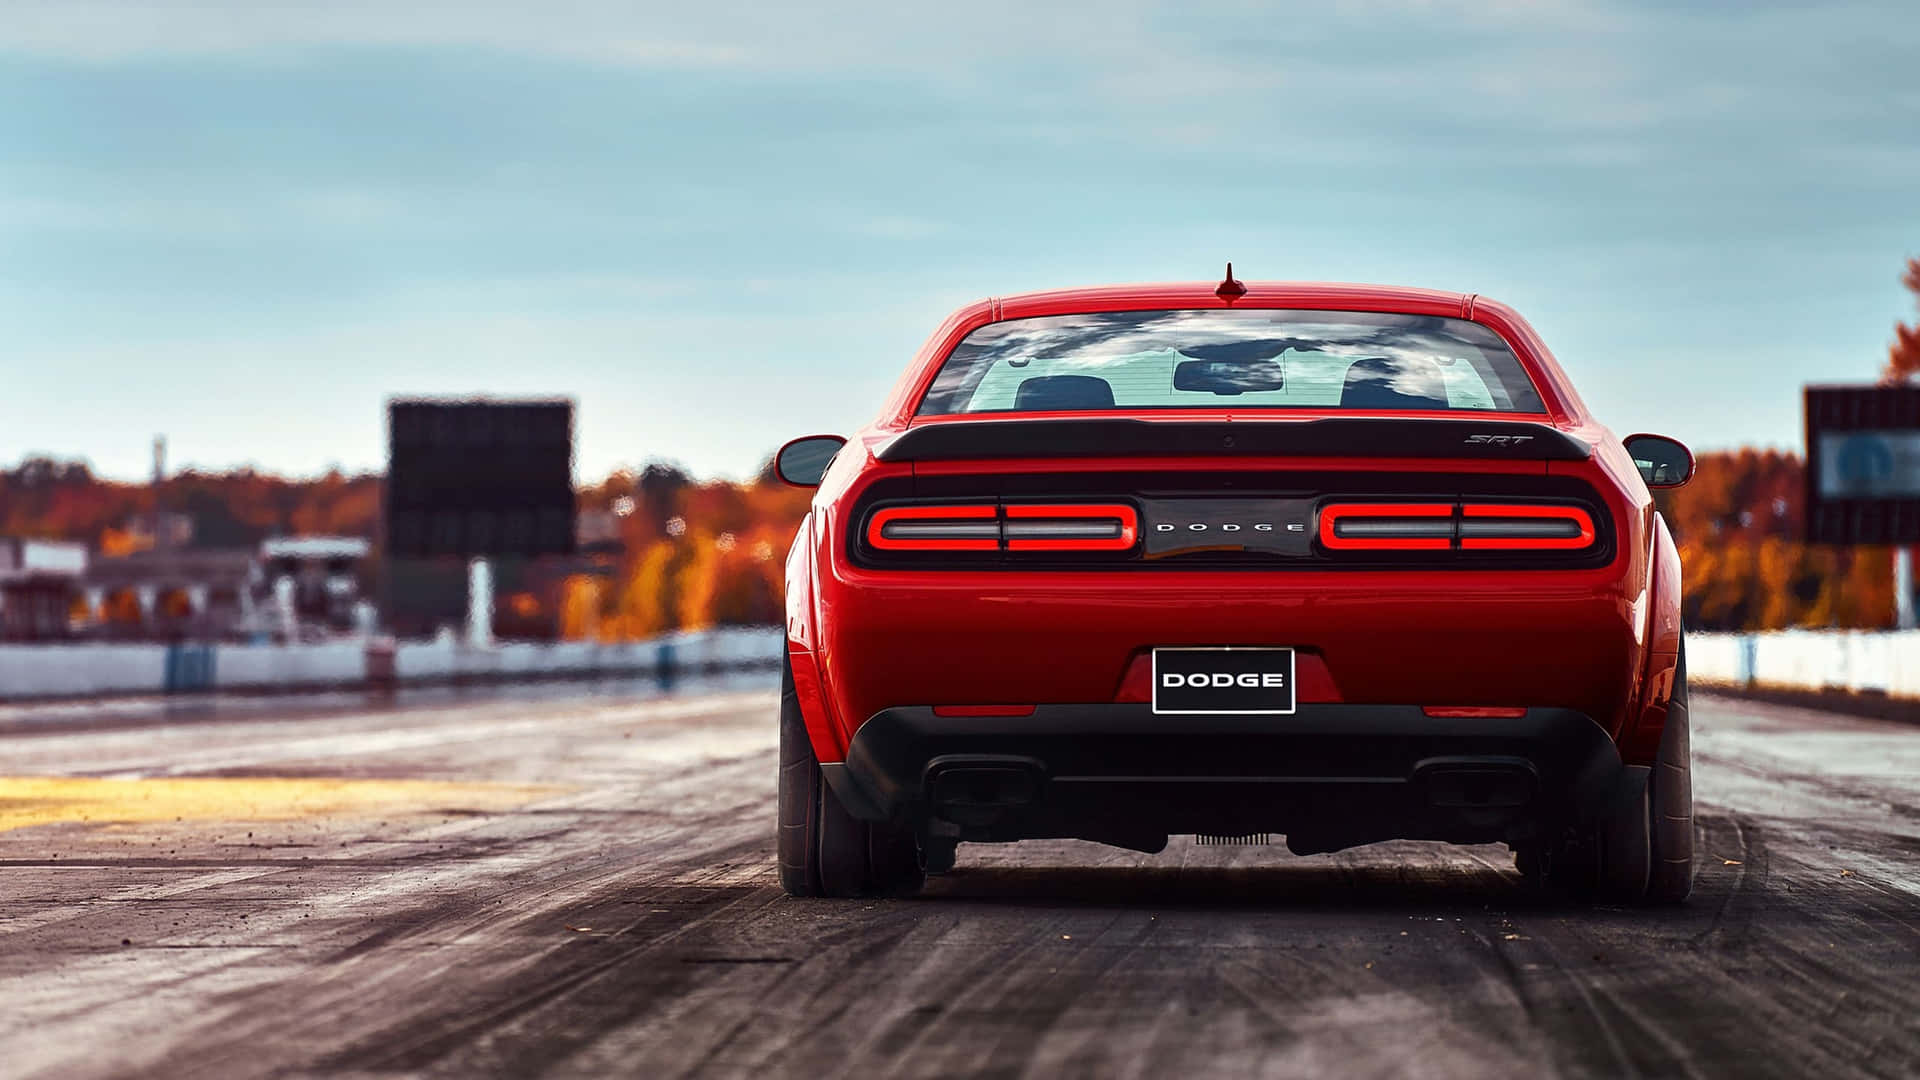 Den røde Dodge Challenger bagende Wallpaper